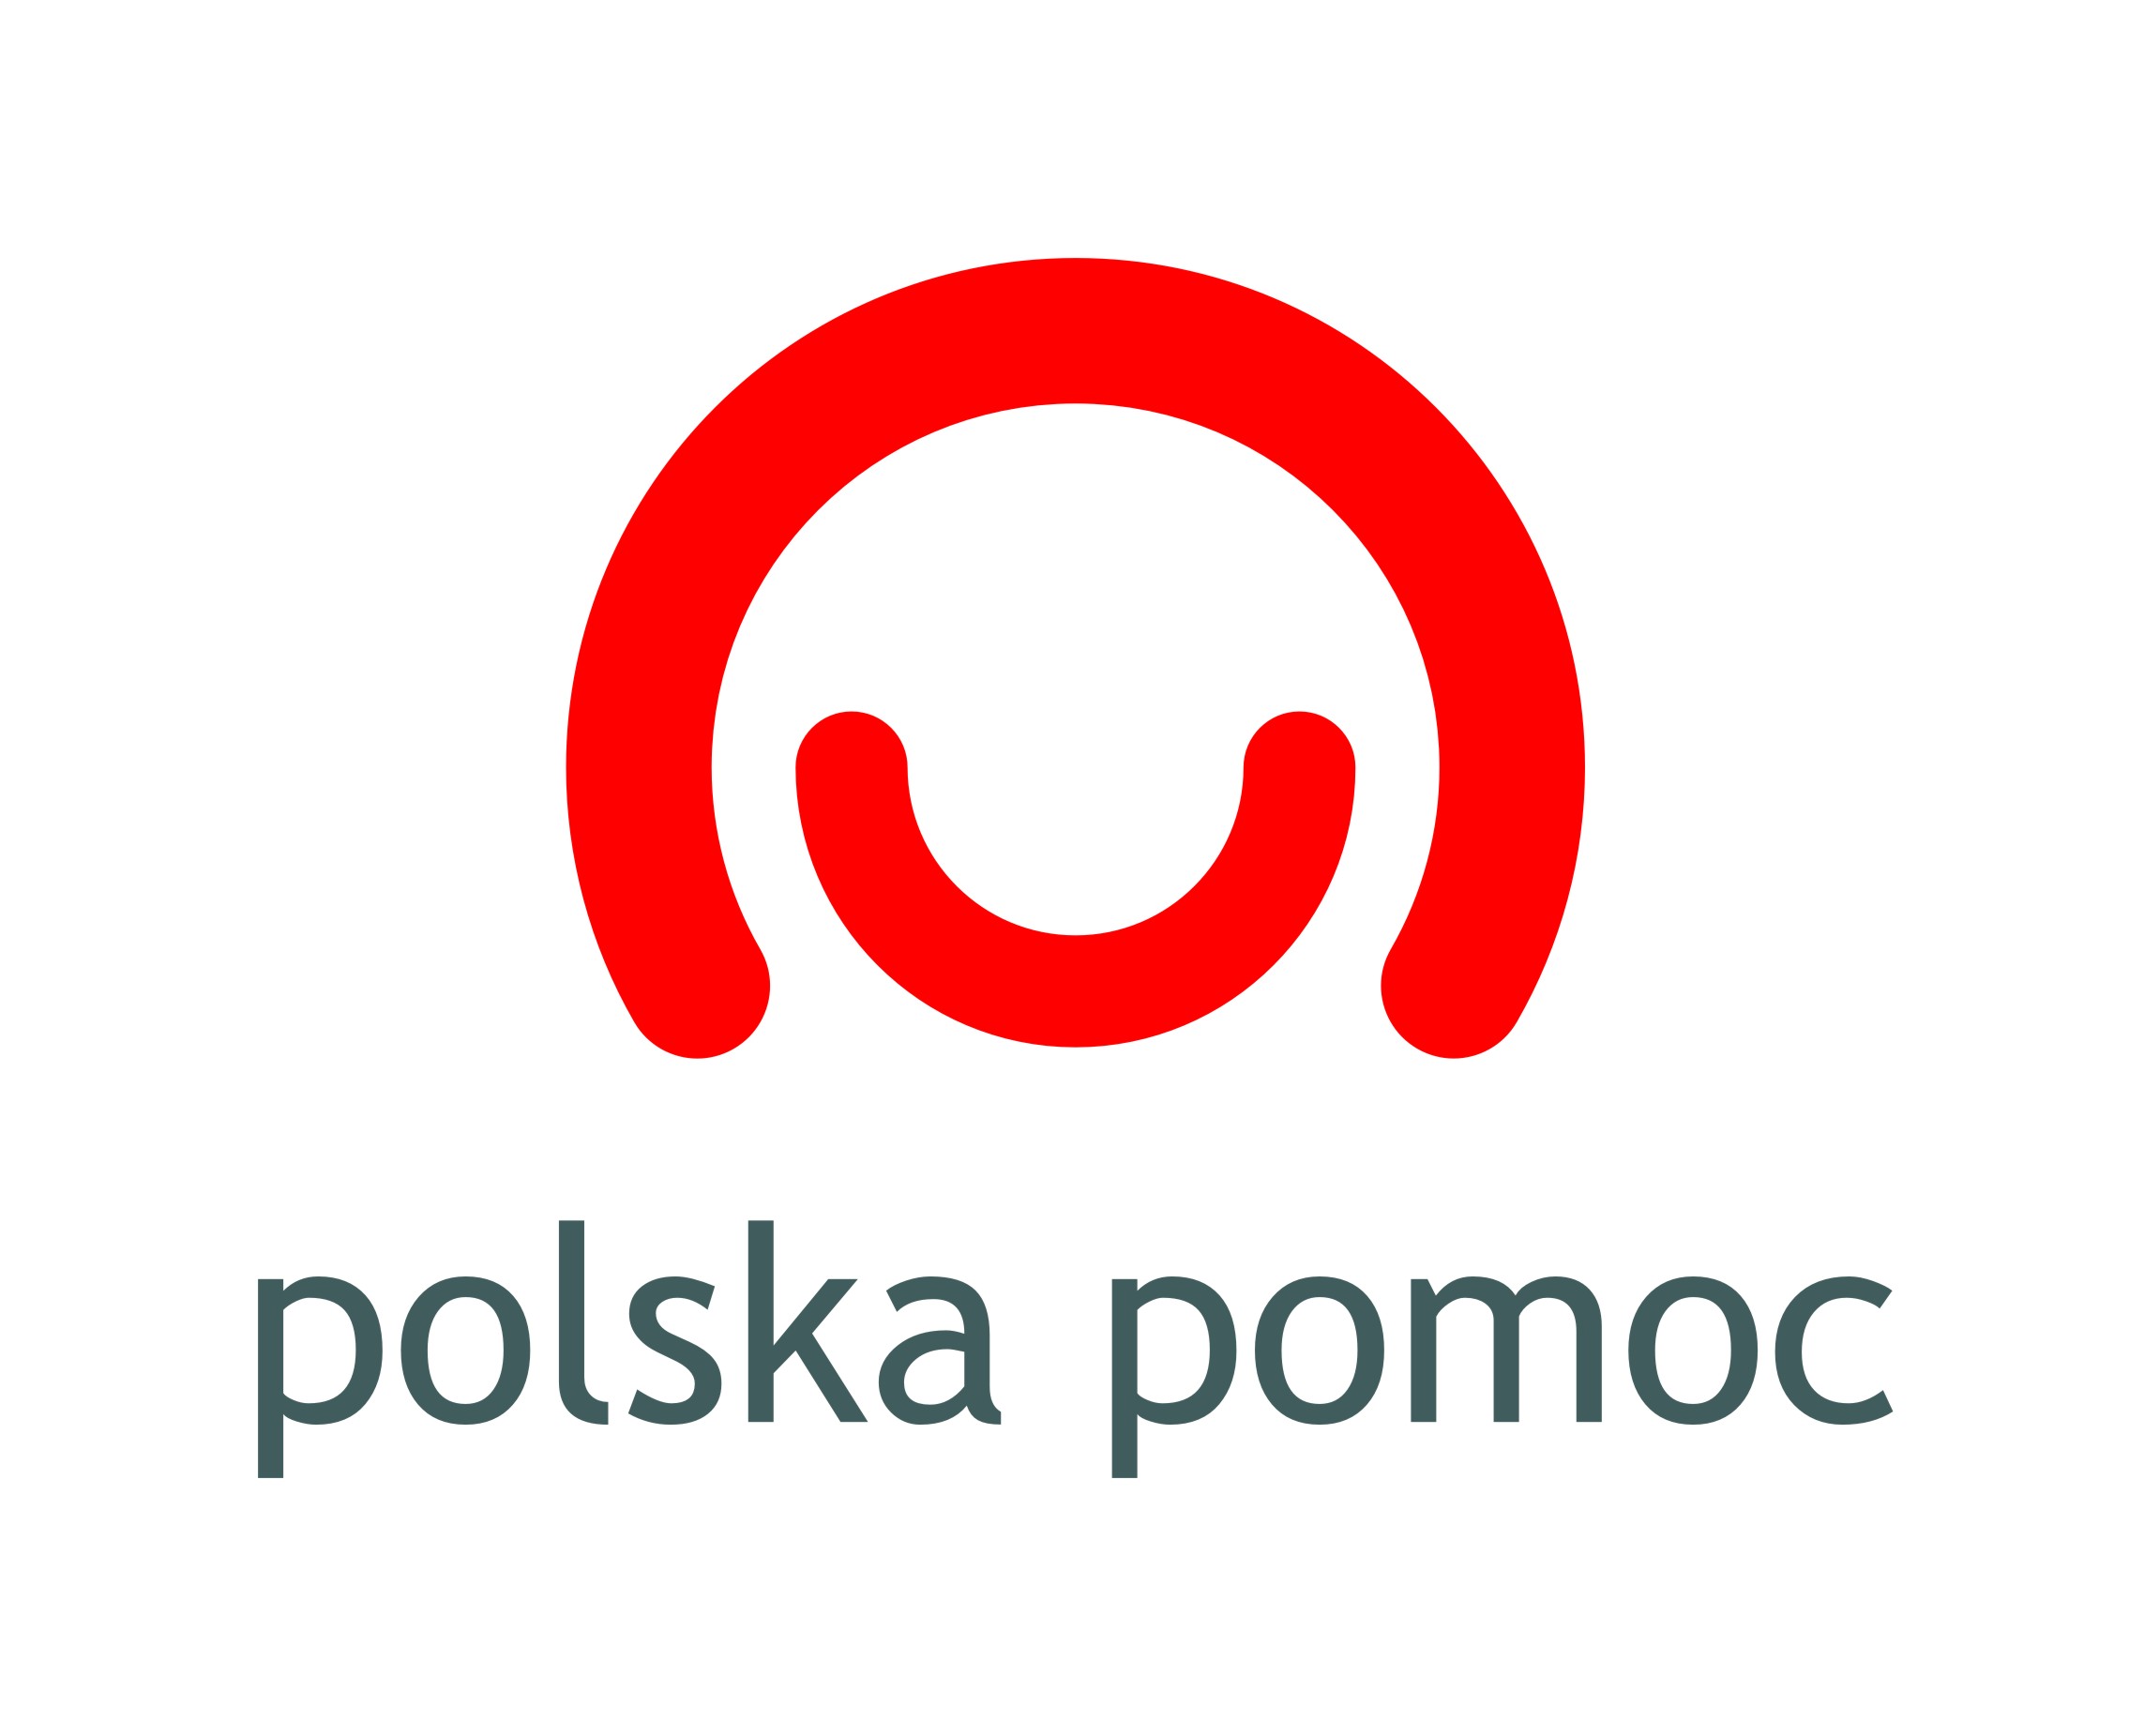 PolskaPomoc